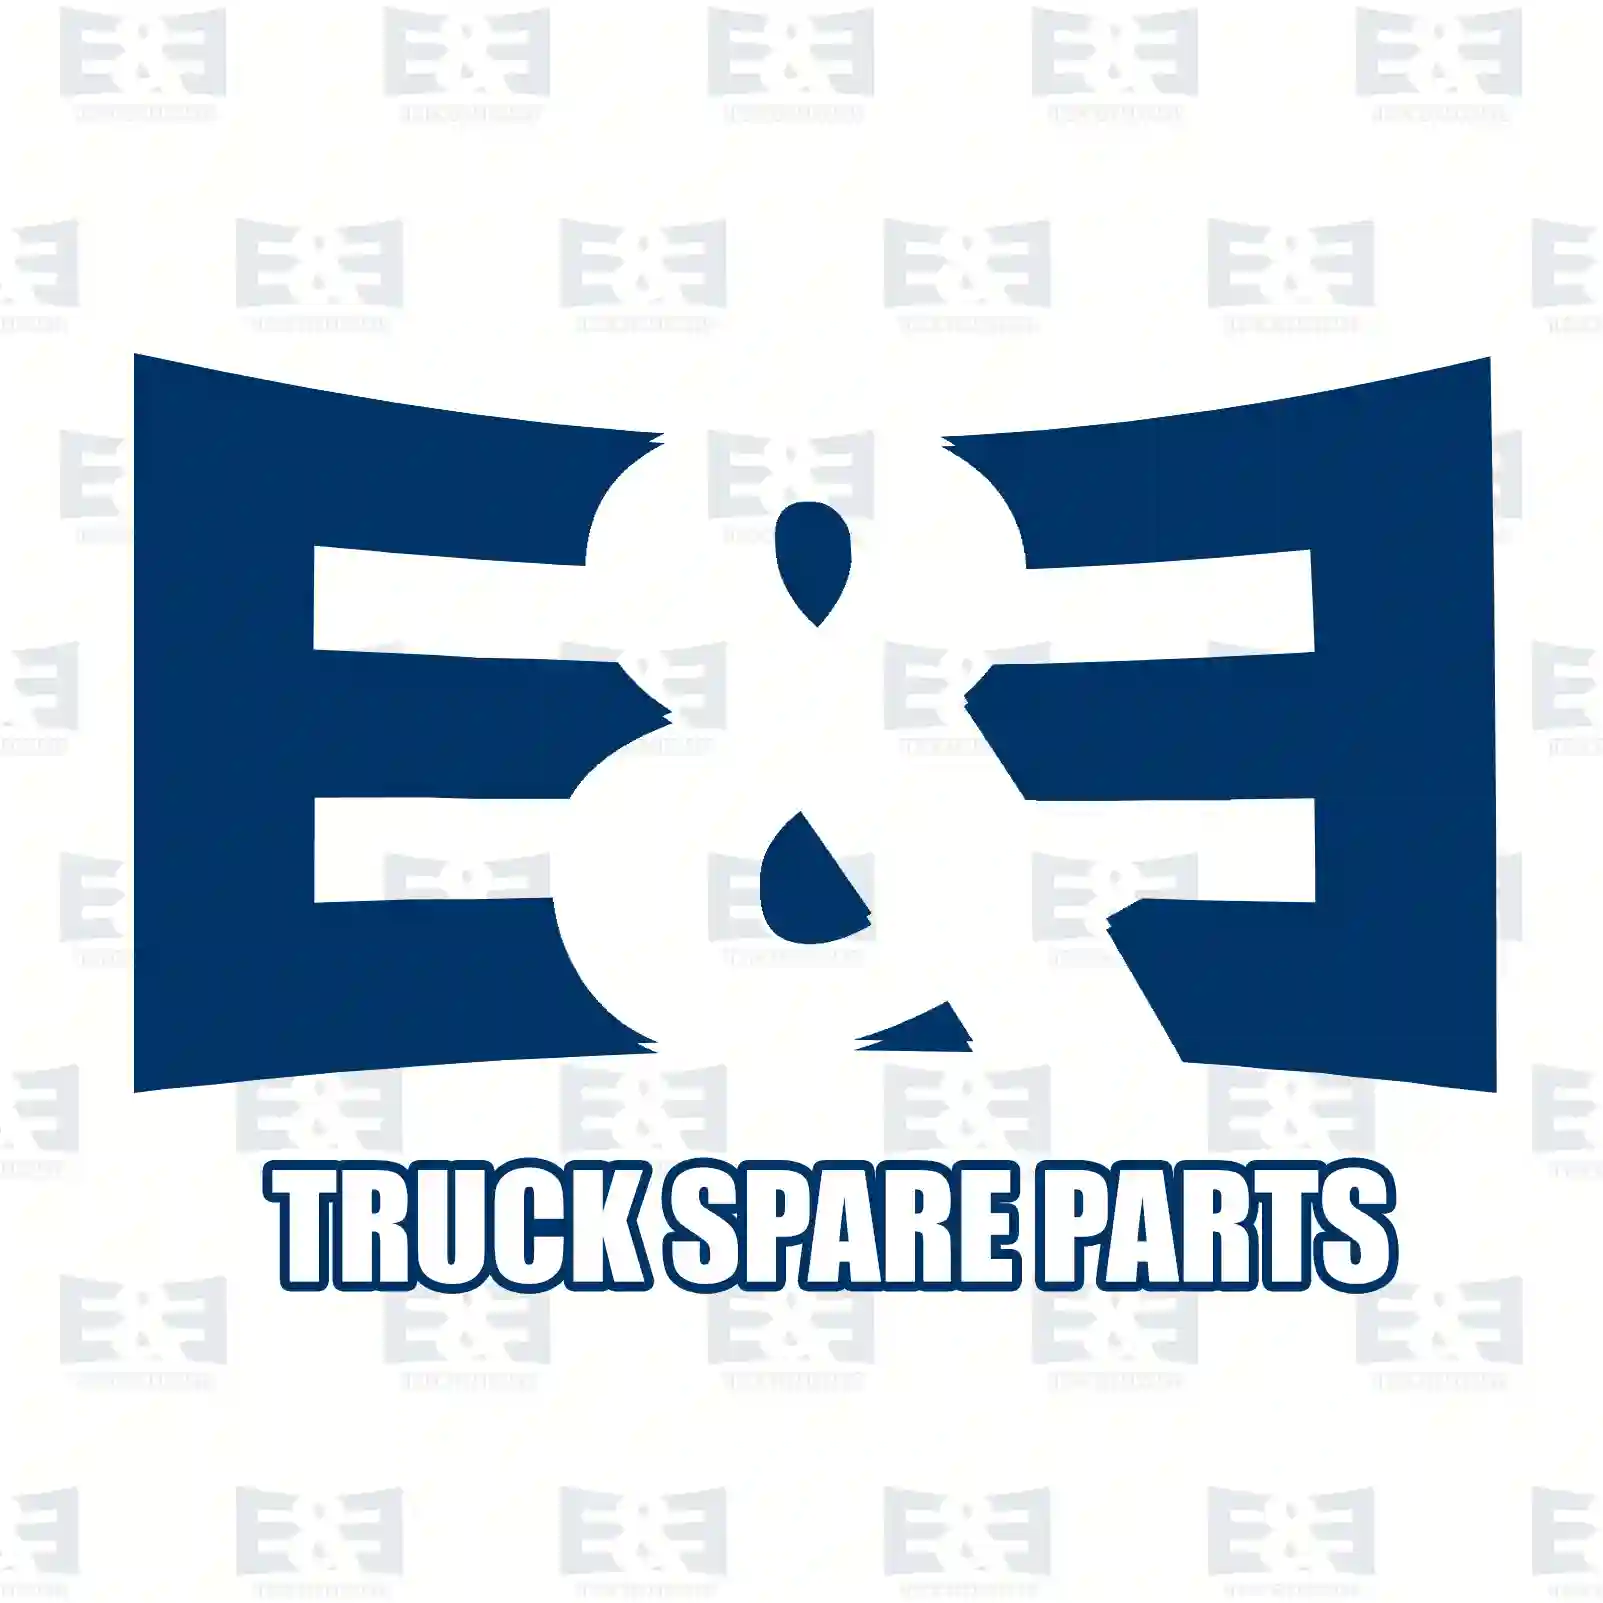 Follower, 2E2278713, 7421751233, 21480996, 21751233 ||  2E2278713 E&E Truck Spare Parts | Truck Spare Parts, Auotomotive Spare Parts Follower, 2E2278713, 7421751233, 21480996, 21751233 ||  2E2278713 E&E Truck Spare Parts | Truck Spare Parts, Auotomotive Spare Parts